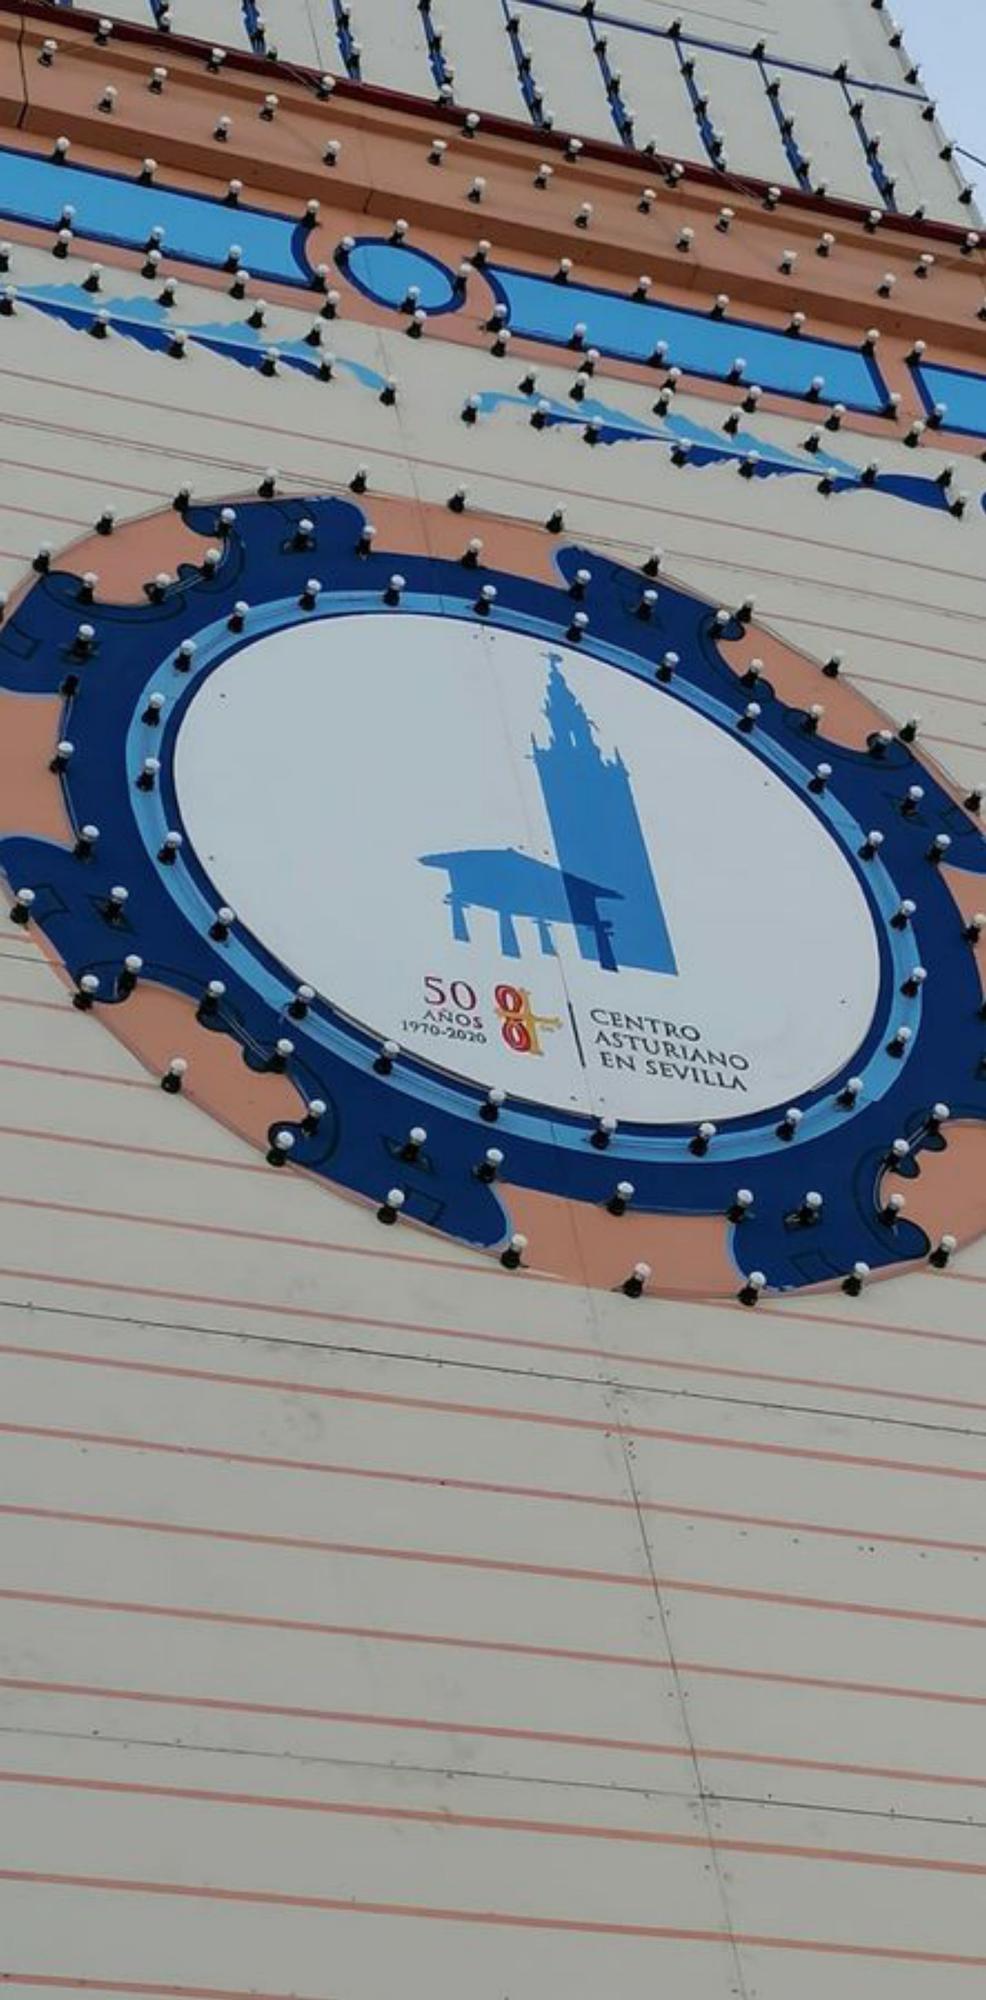 El logotipo del Centro Asturiano de Sevilla en la portada de la Feria.